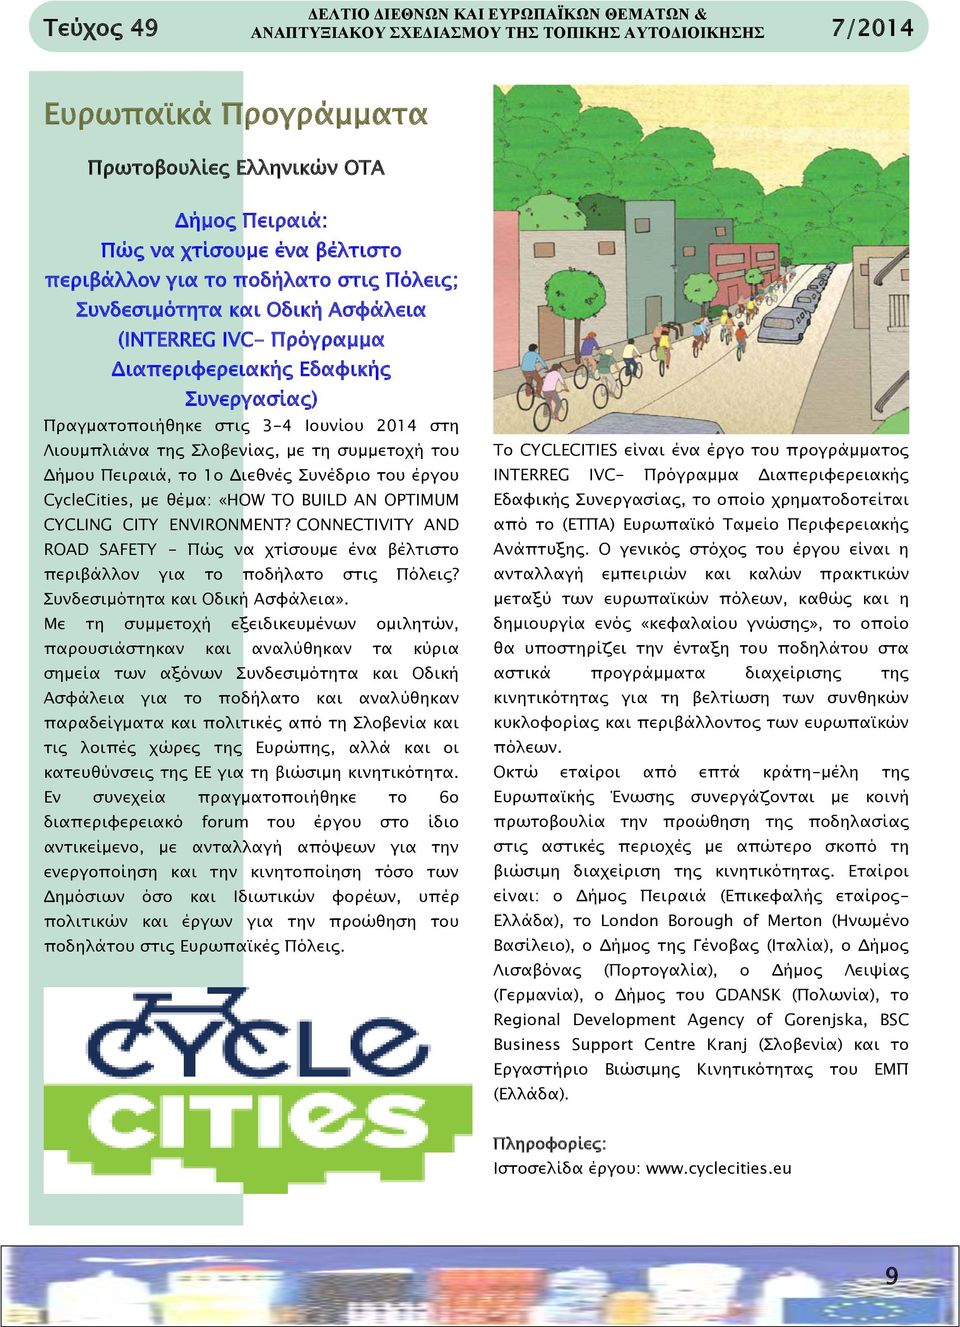 Σλοβενίας, με τη συμμετοχή του Δήμου Πειραιά, το 1ο Διεθνές Συνέδριο του έργου CycleCities, με θέμα: «HOW TO BUILD AN OPTIMUM CYCLING CITY ENVIRONMENT?